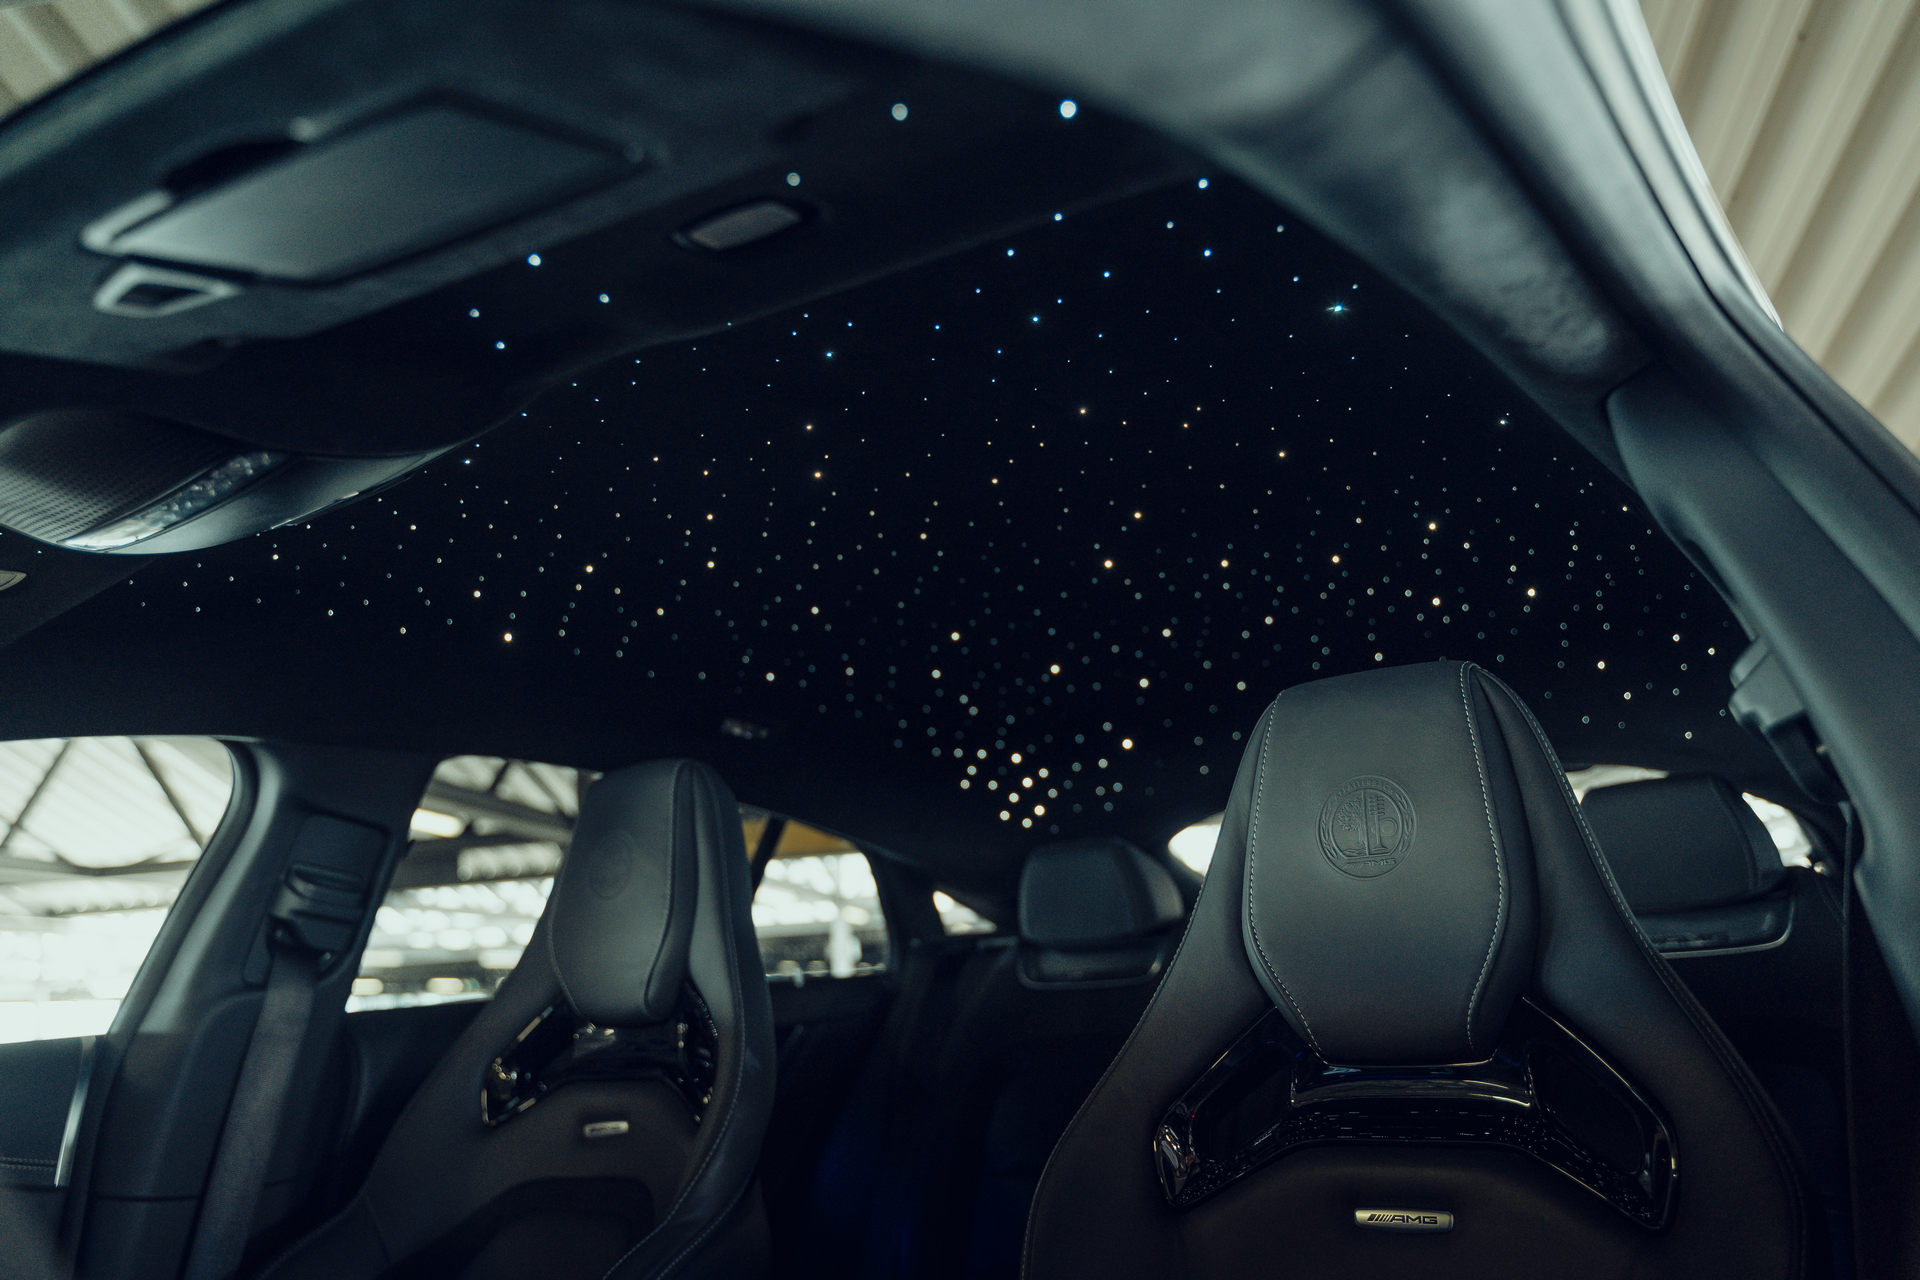 Trần xe được tạo thành từ những ngôi sao lấp lánh - điều chỉ thấy trên những chiếc Rolls sang trọng - Royces